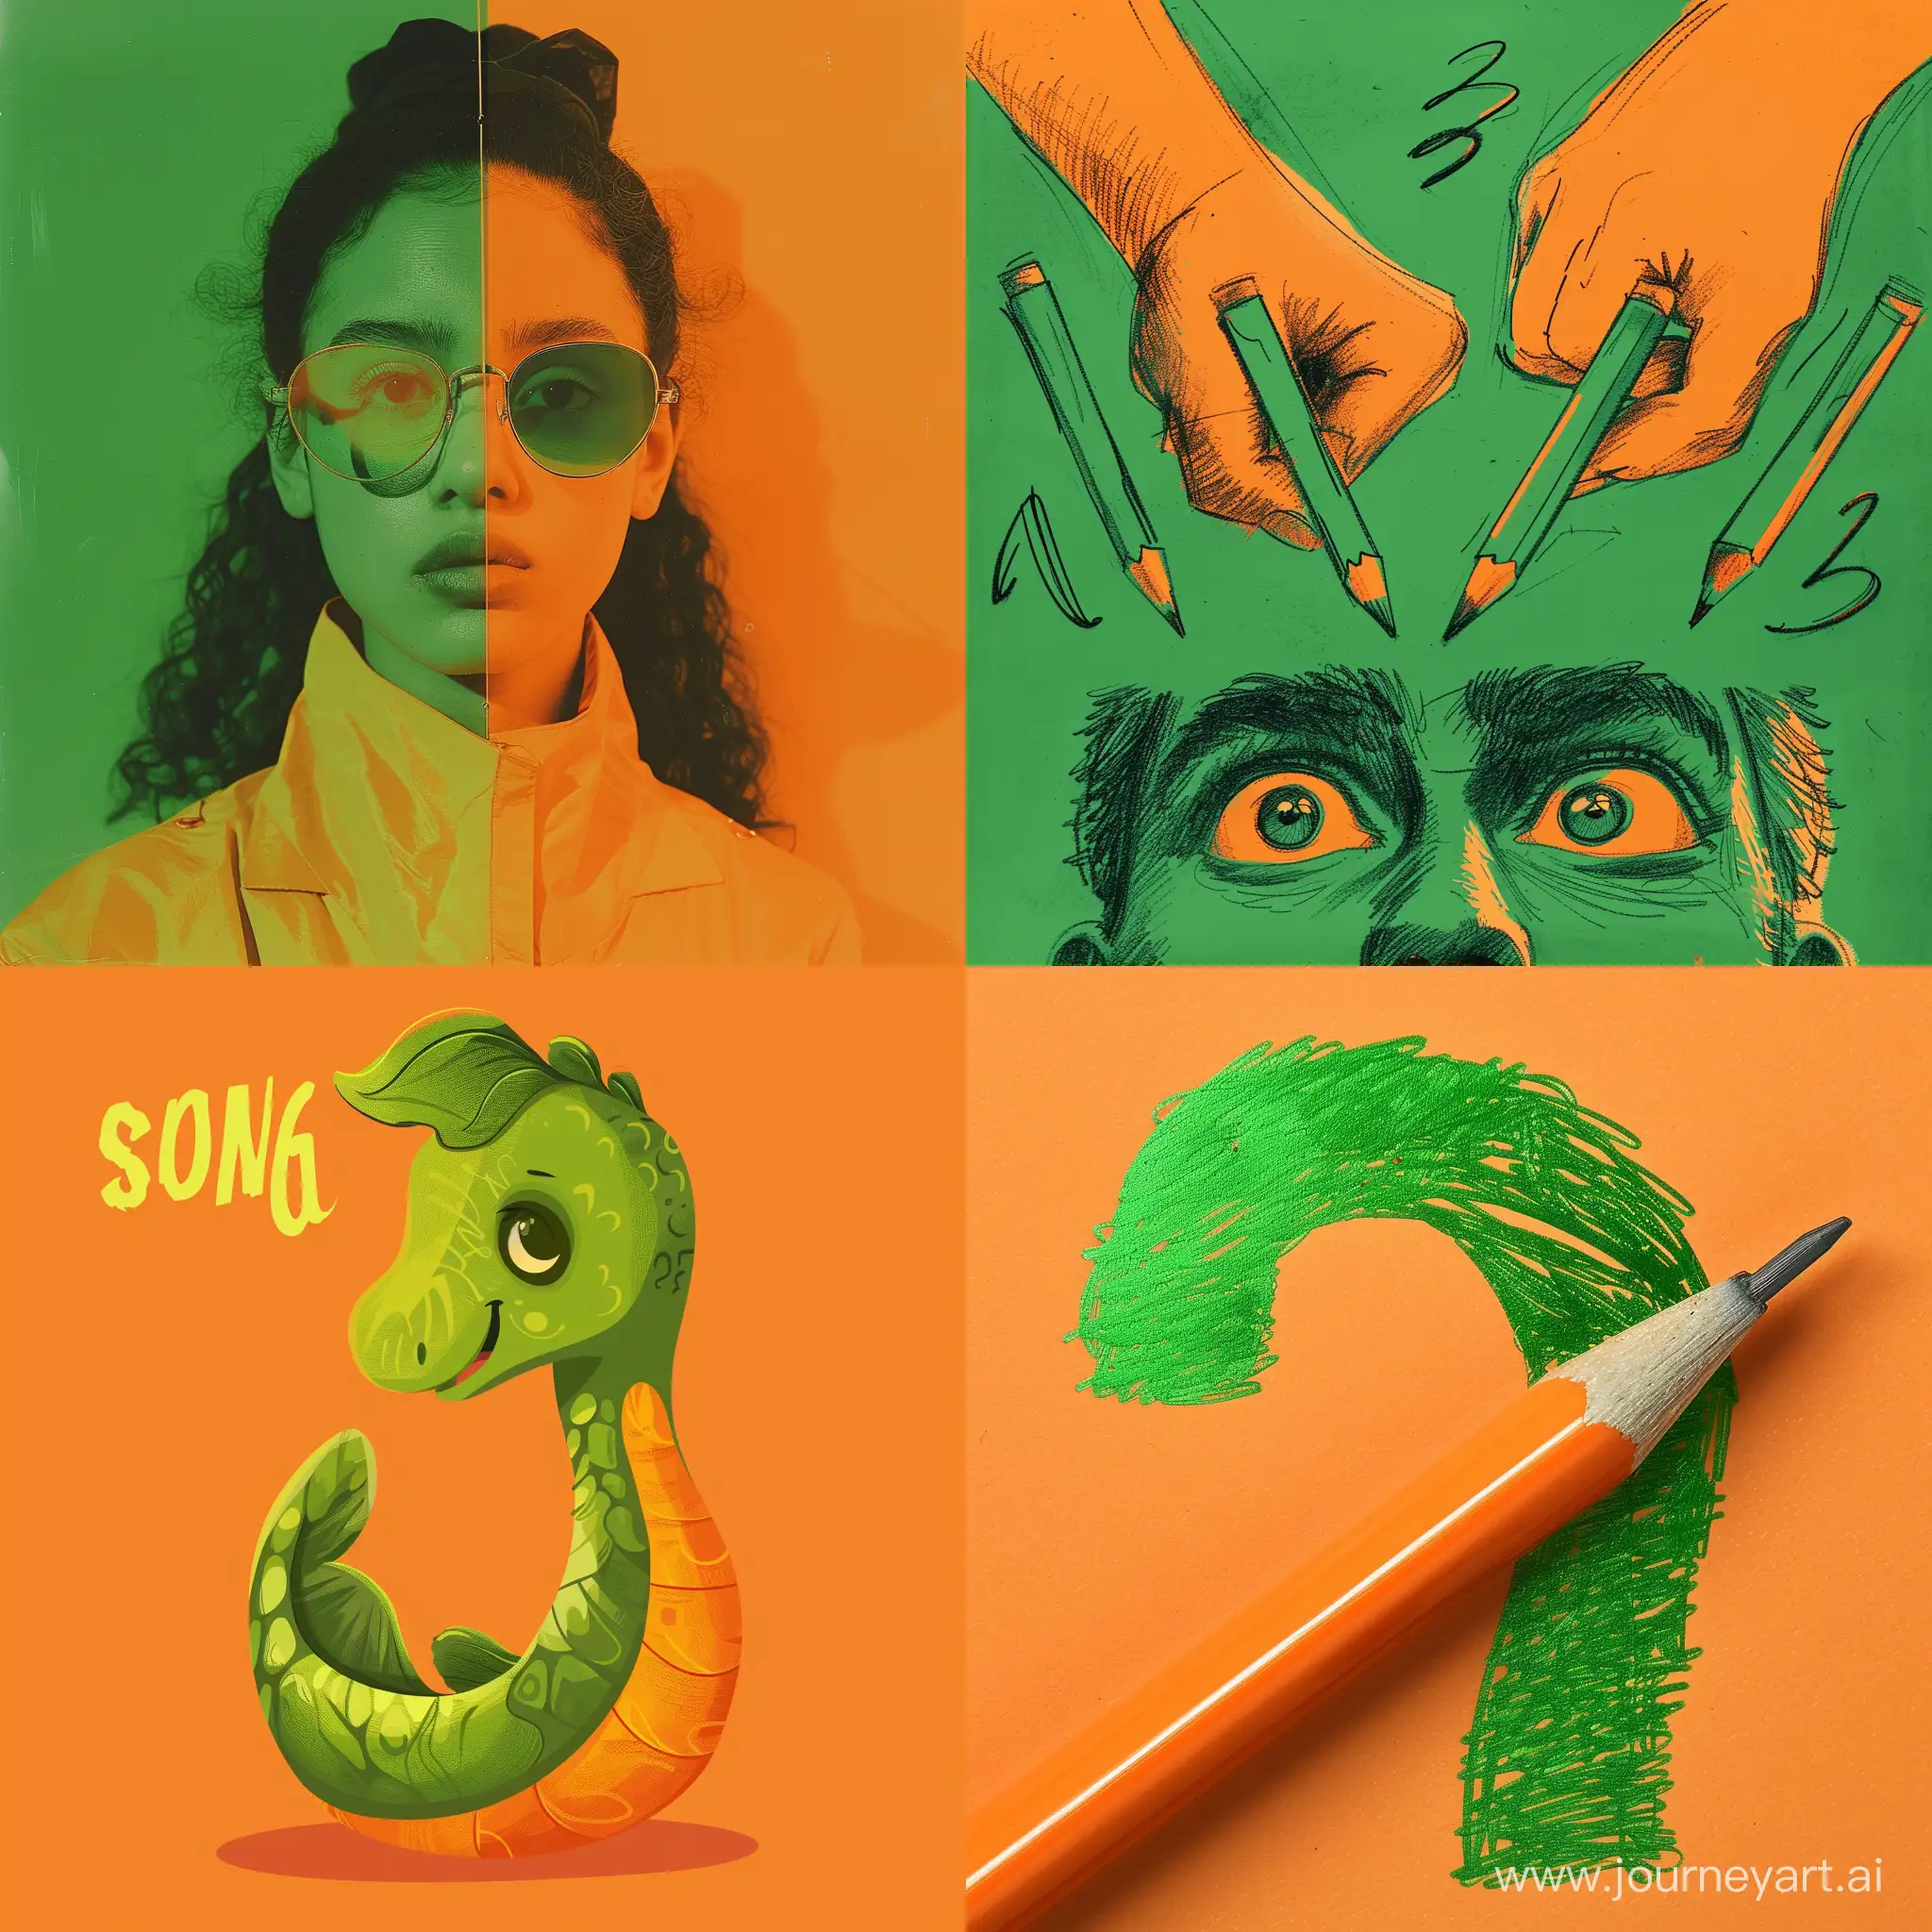 Нарисуй фото для рубрики "Сленг", смысл которой состоит в том что бы спрашивать людей про то знают ли они знаачение новых слов, рисуй в зелено-оранжевых цветах